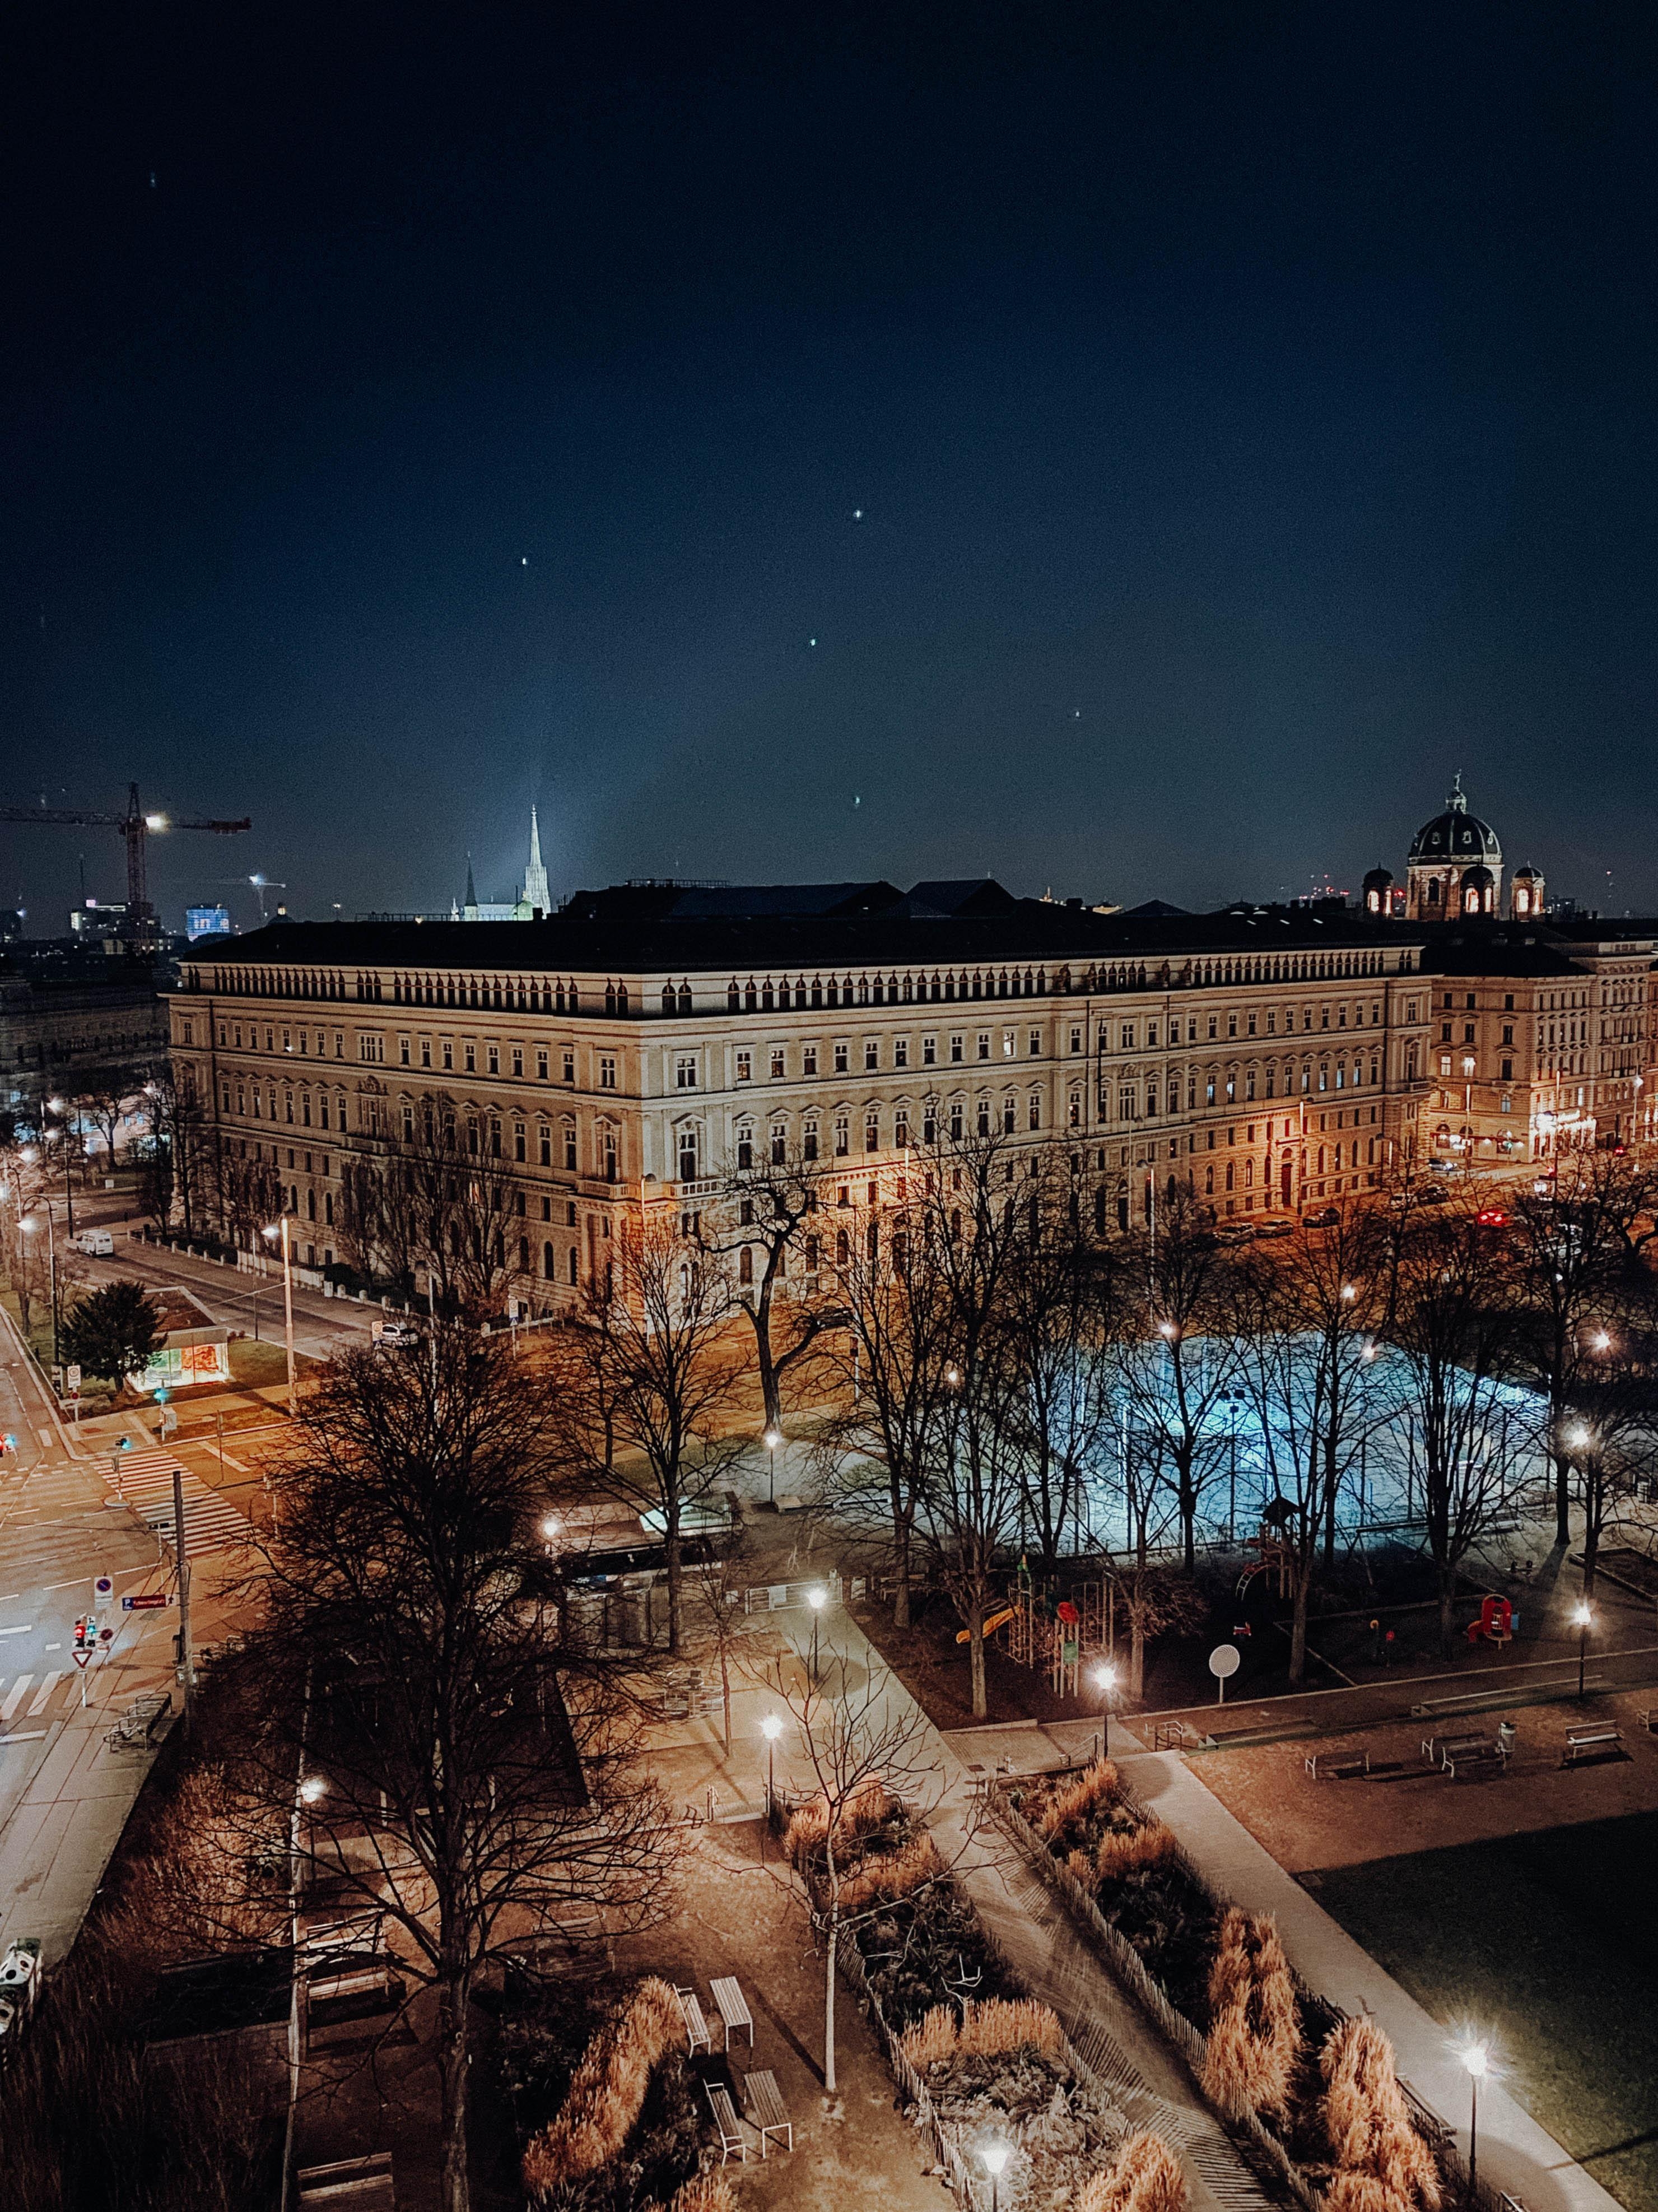 Wien bei Nacht ✨
#wien #travel #sightseeing